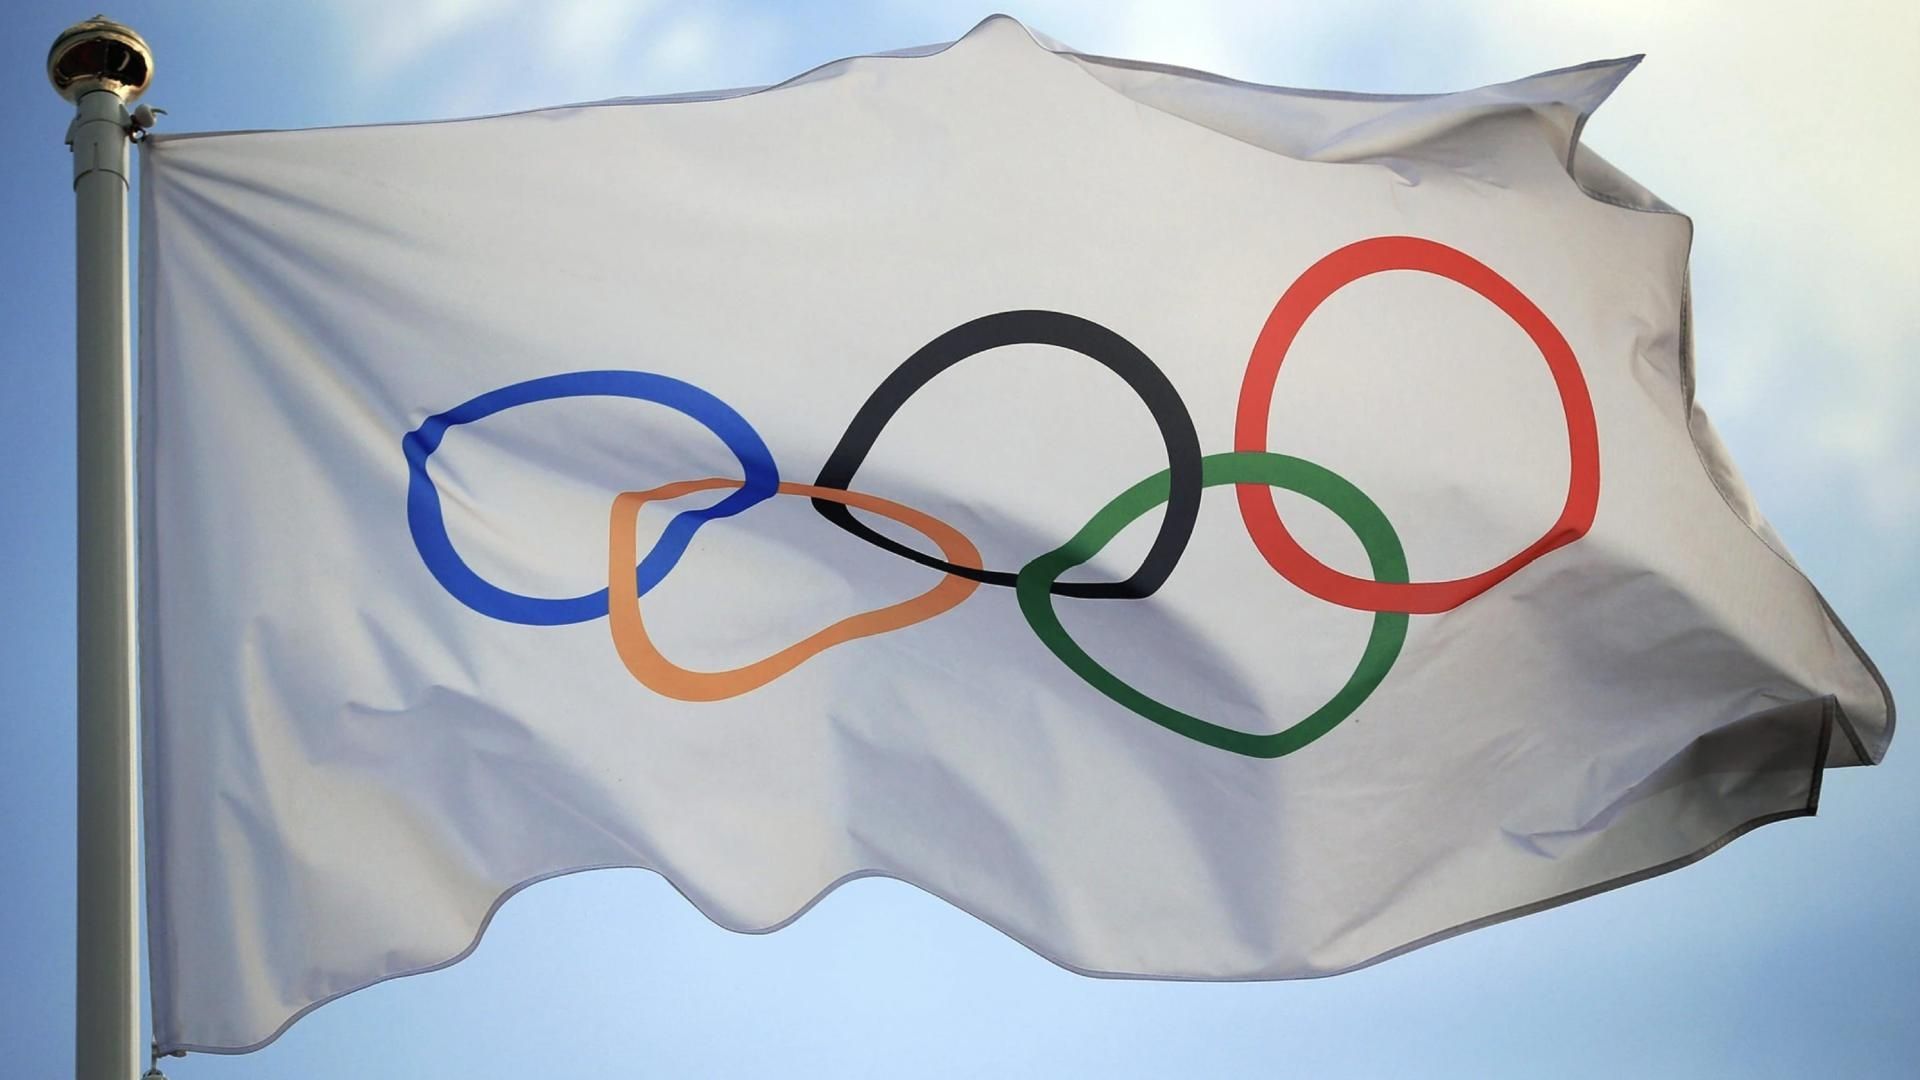 Reintegrar a Rusos y Bielorrusos en juegos olímpicos alienta ataques contra Ucrania